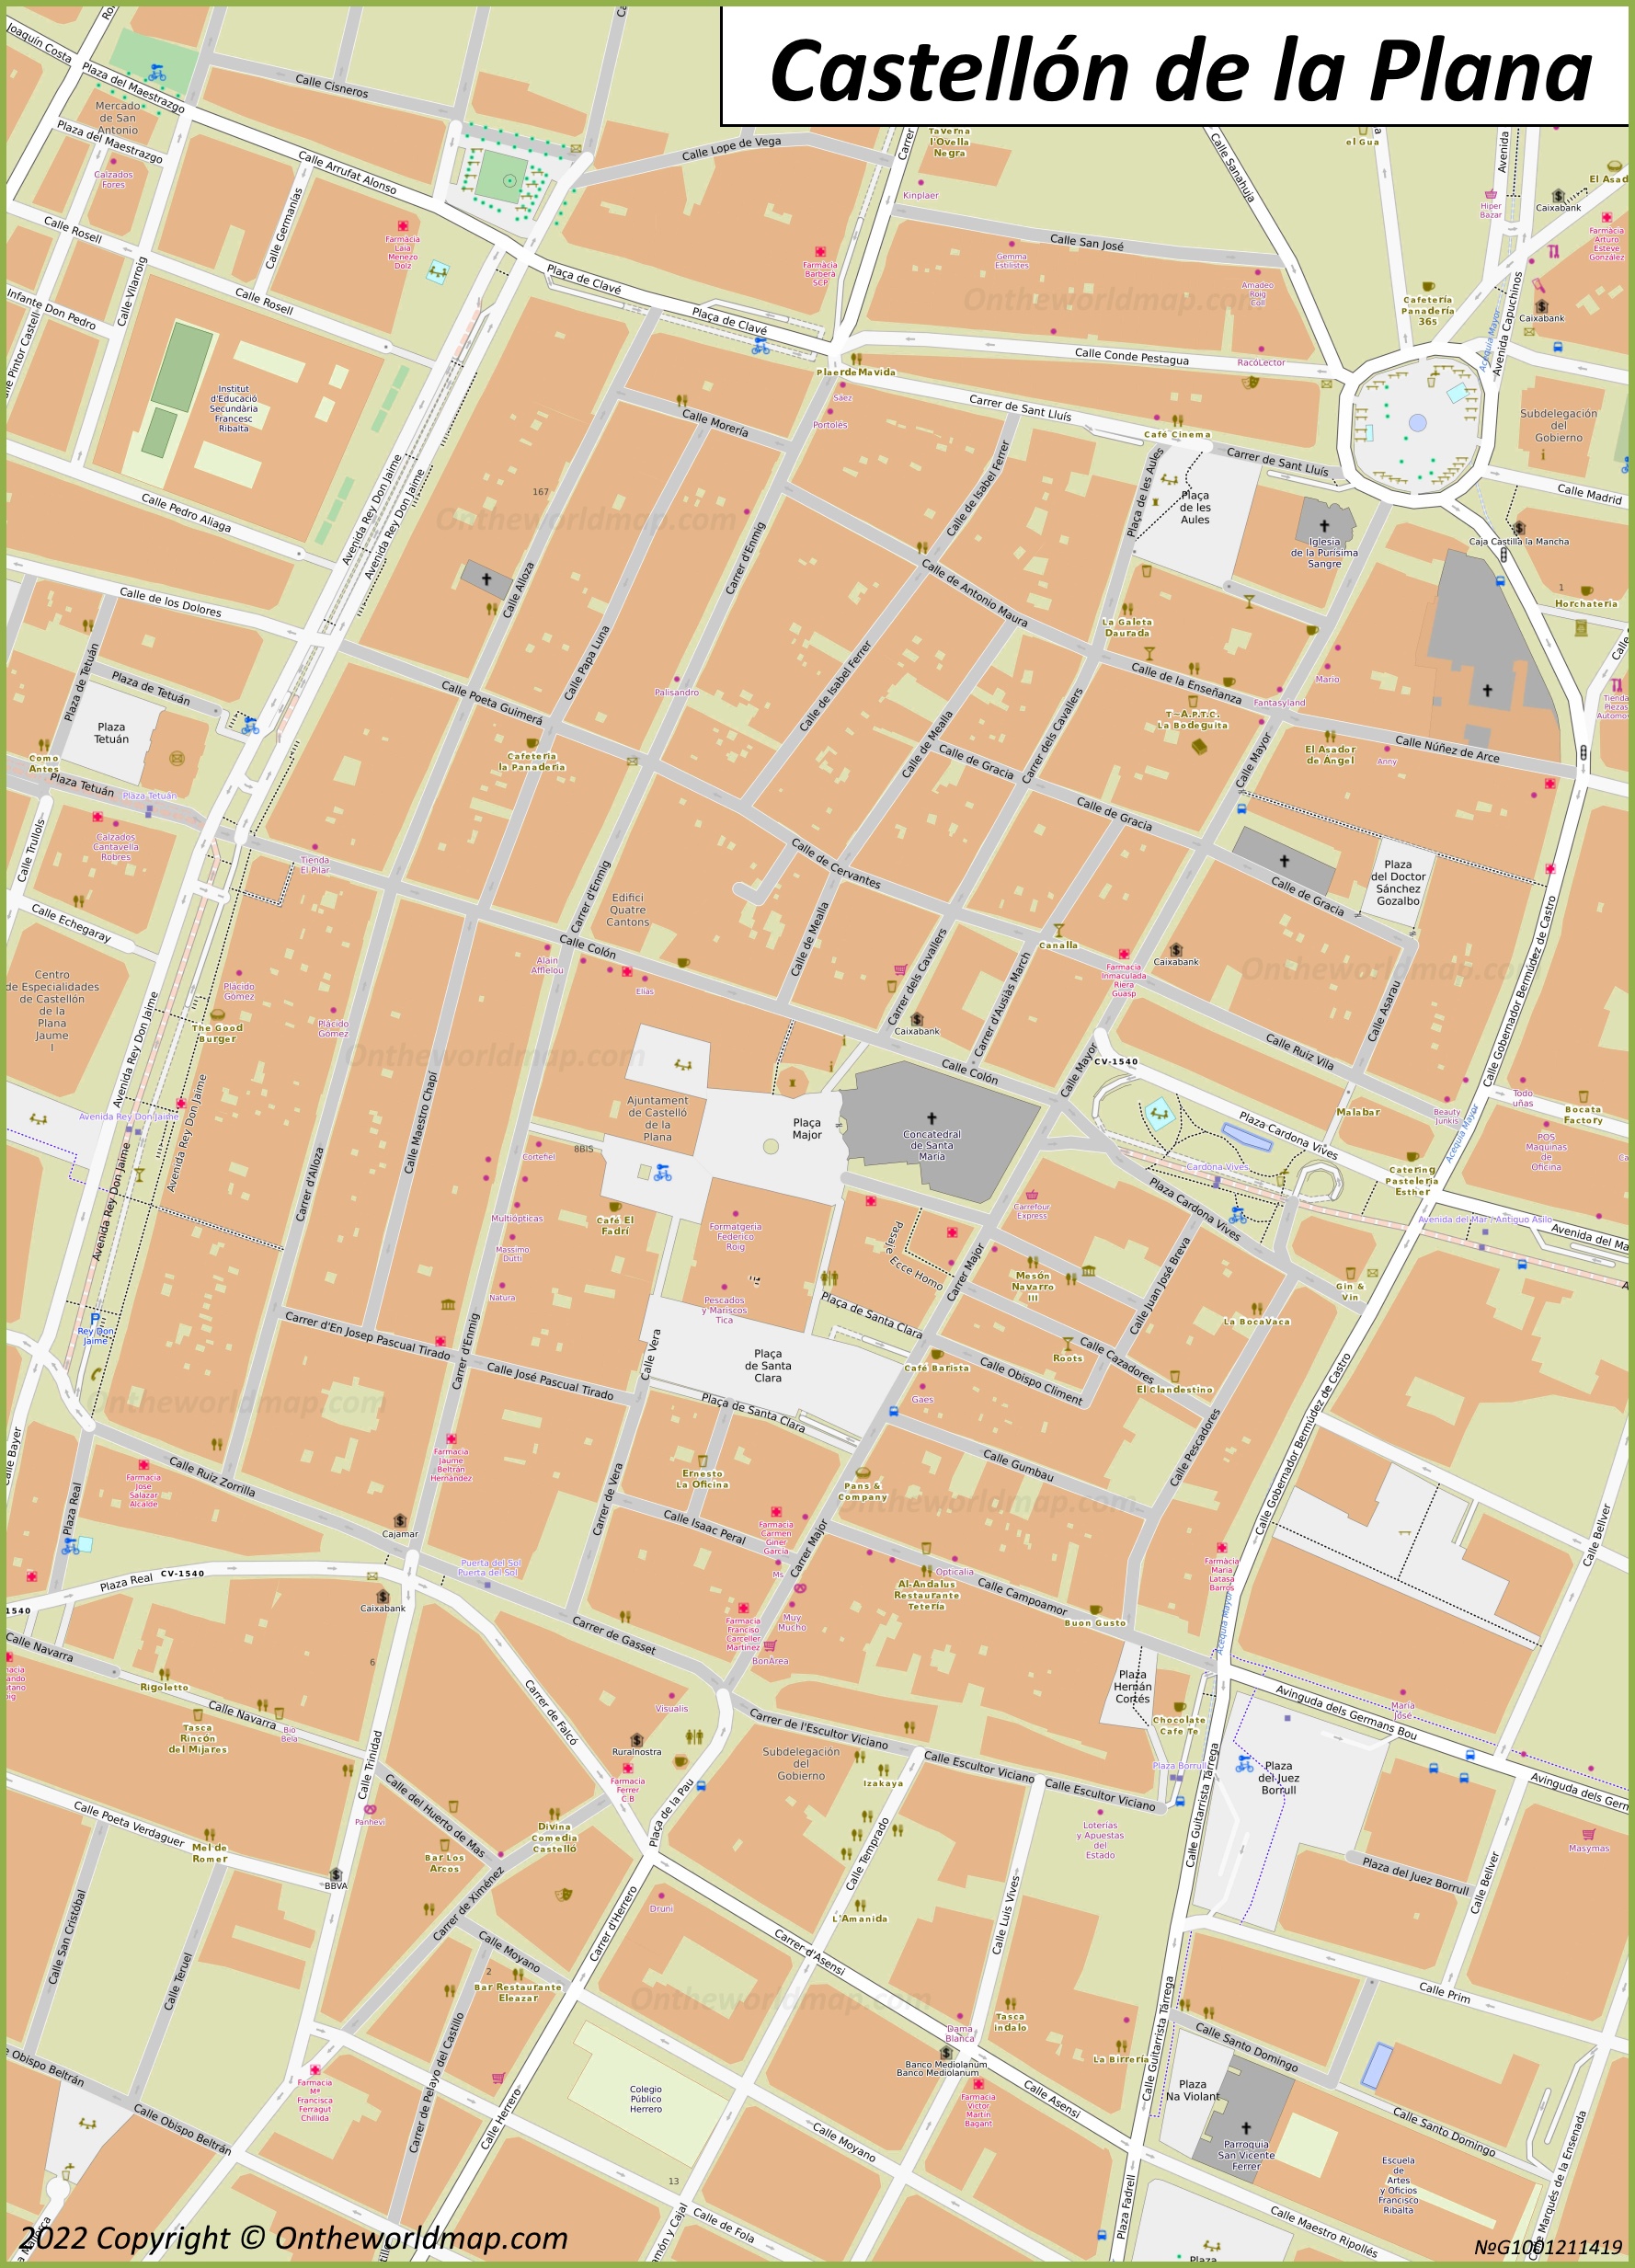 Mapa de la ciudad alta de Castellón de la Plana